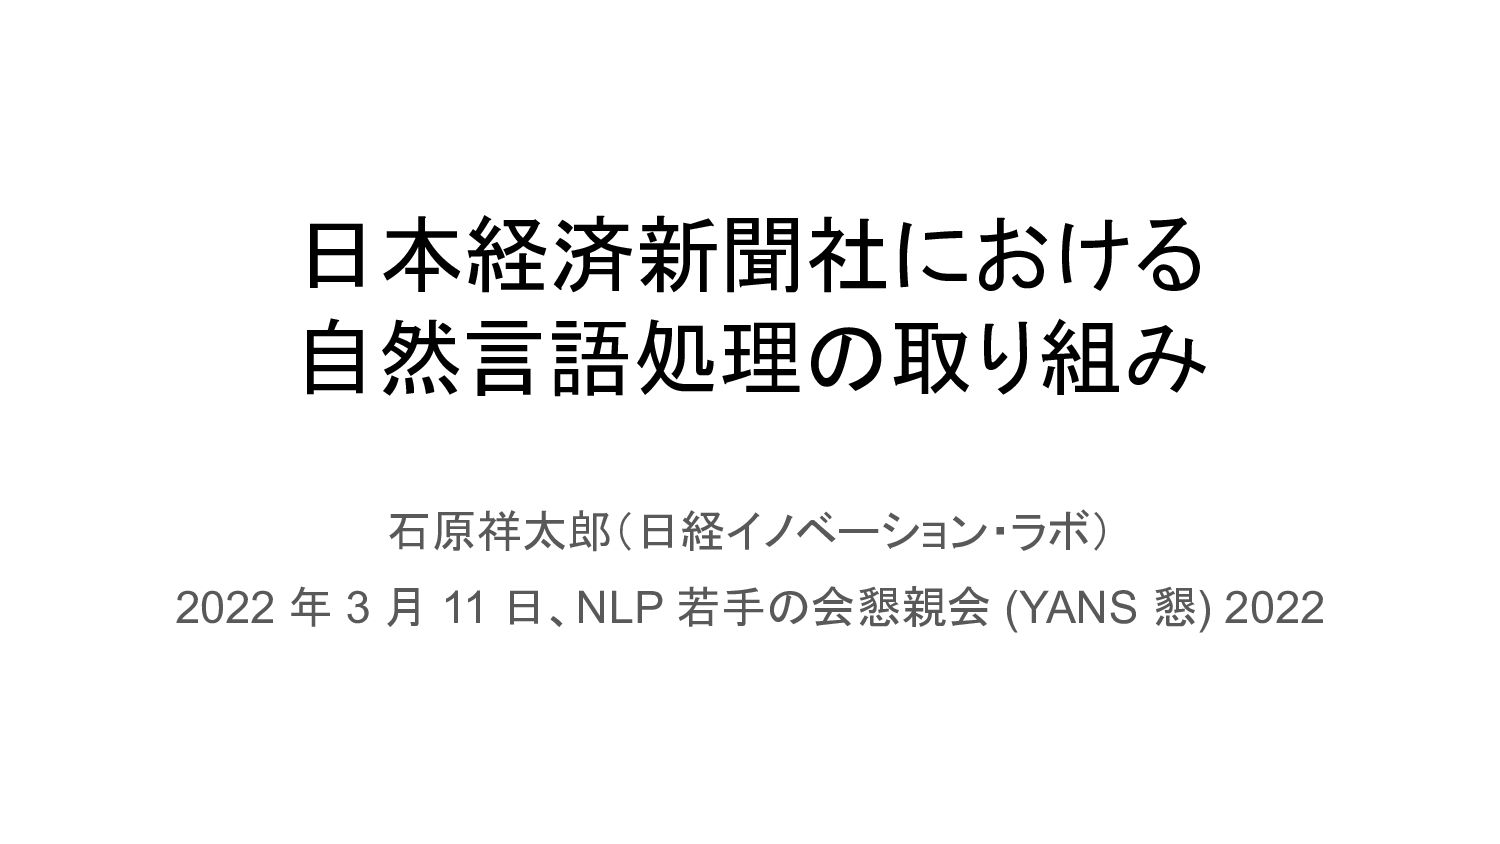 日本経済新聞社における自然言語処理の取り組み / yans2022 nikkei nlp